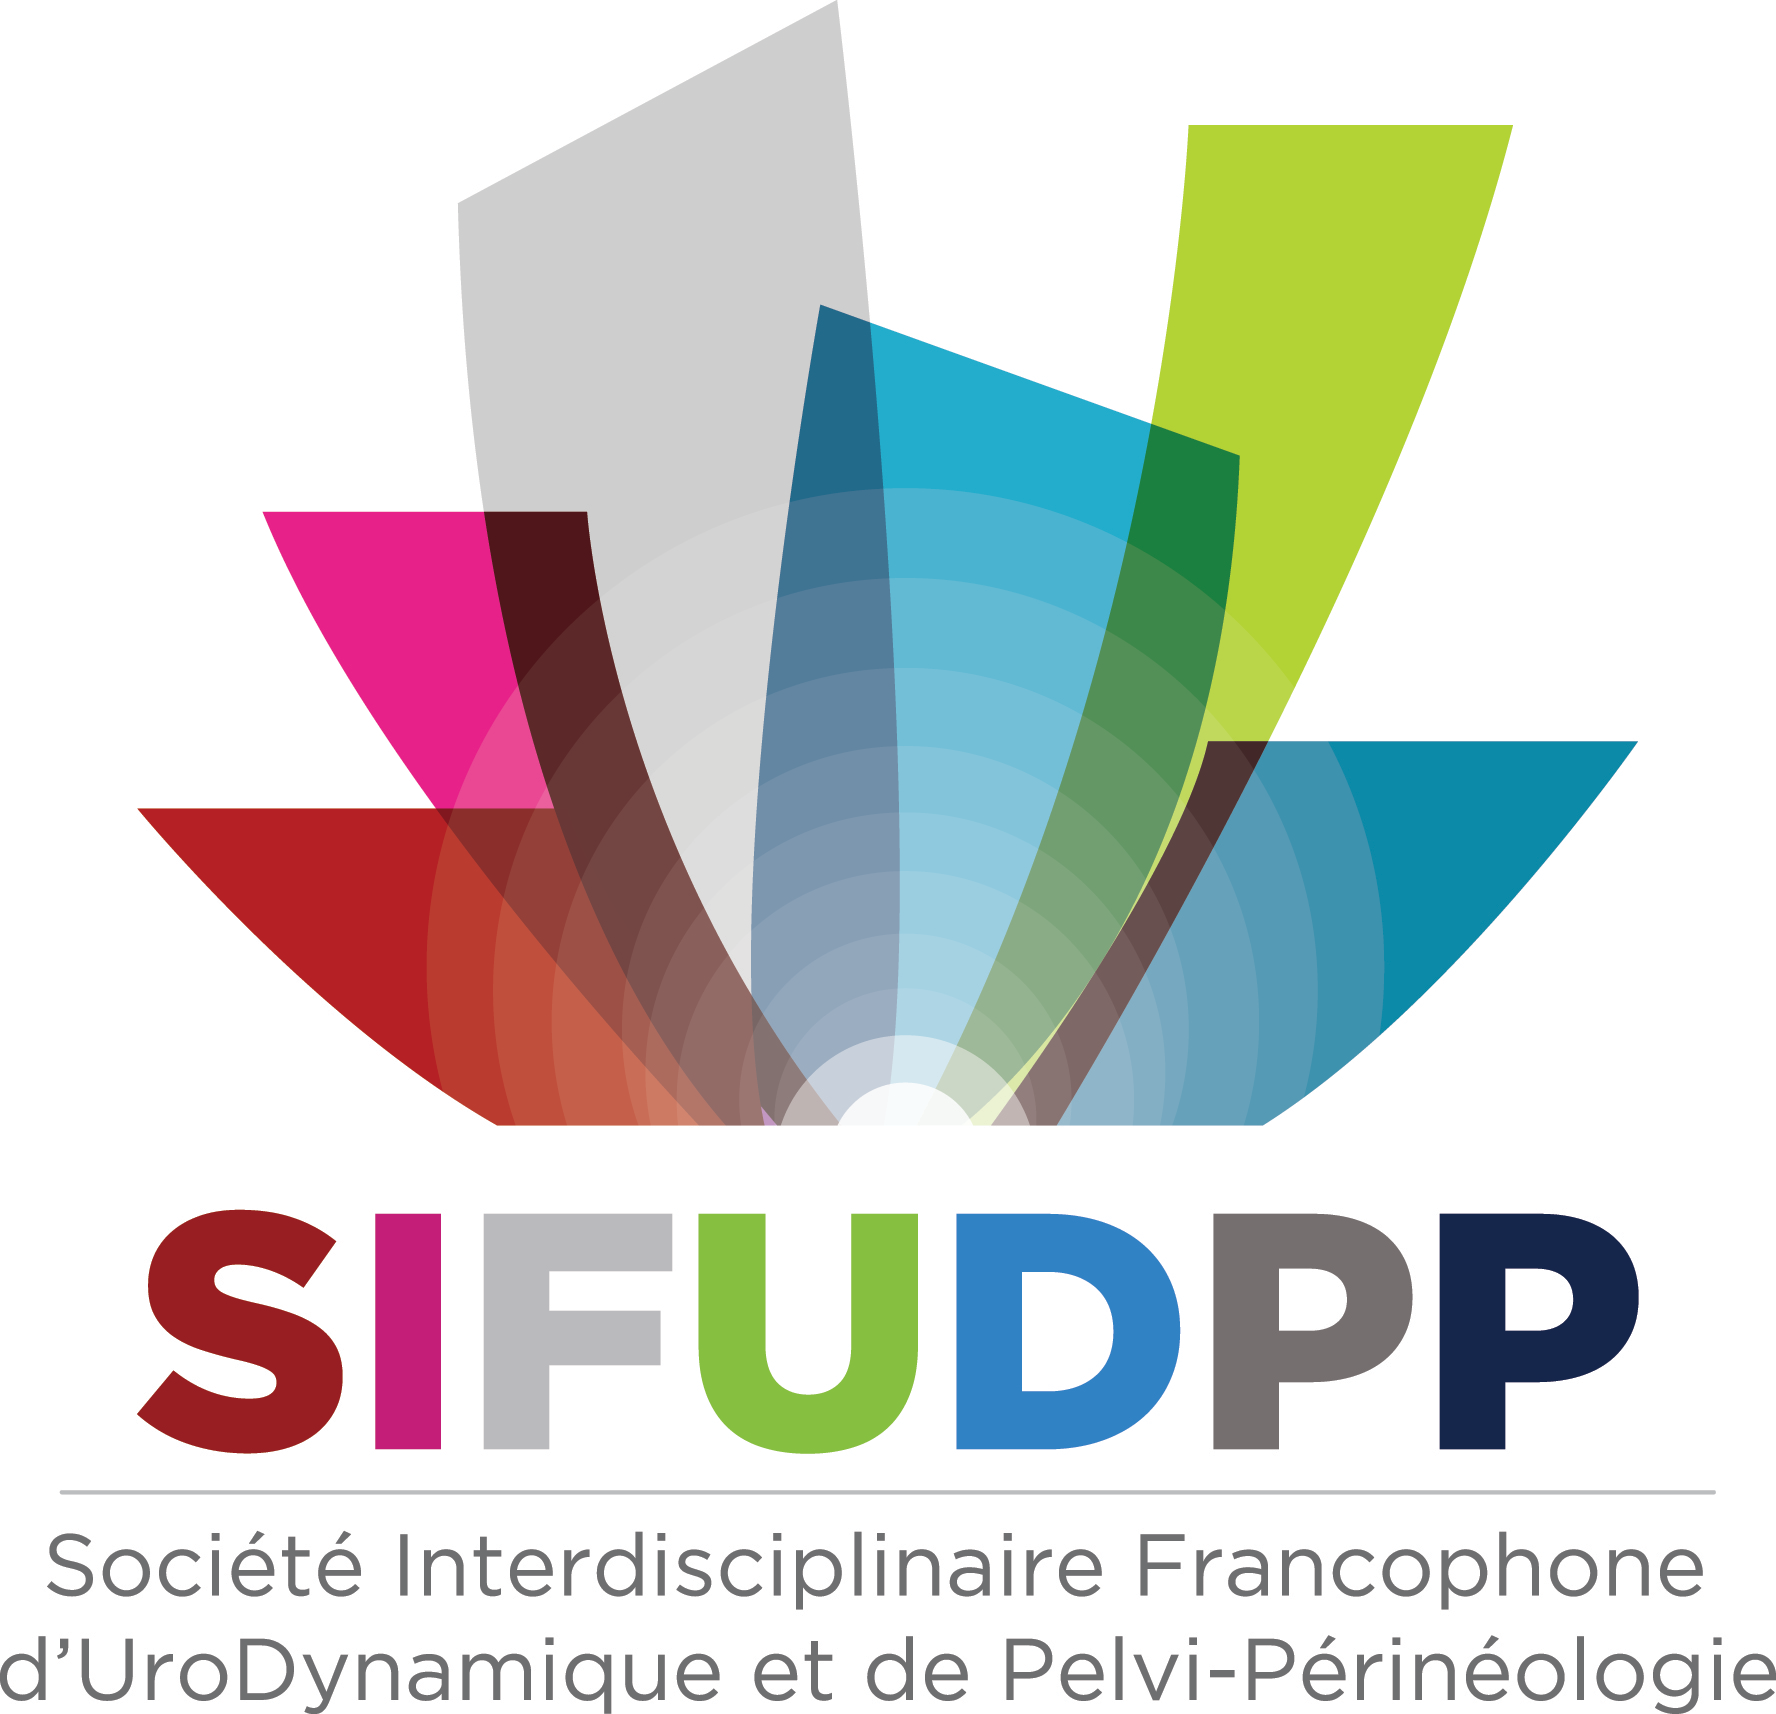 SIFUD-PP Paris 2016 : Comment bien gérer la complication ?